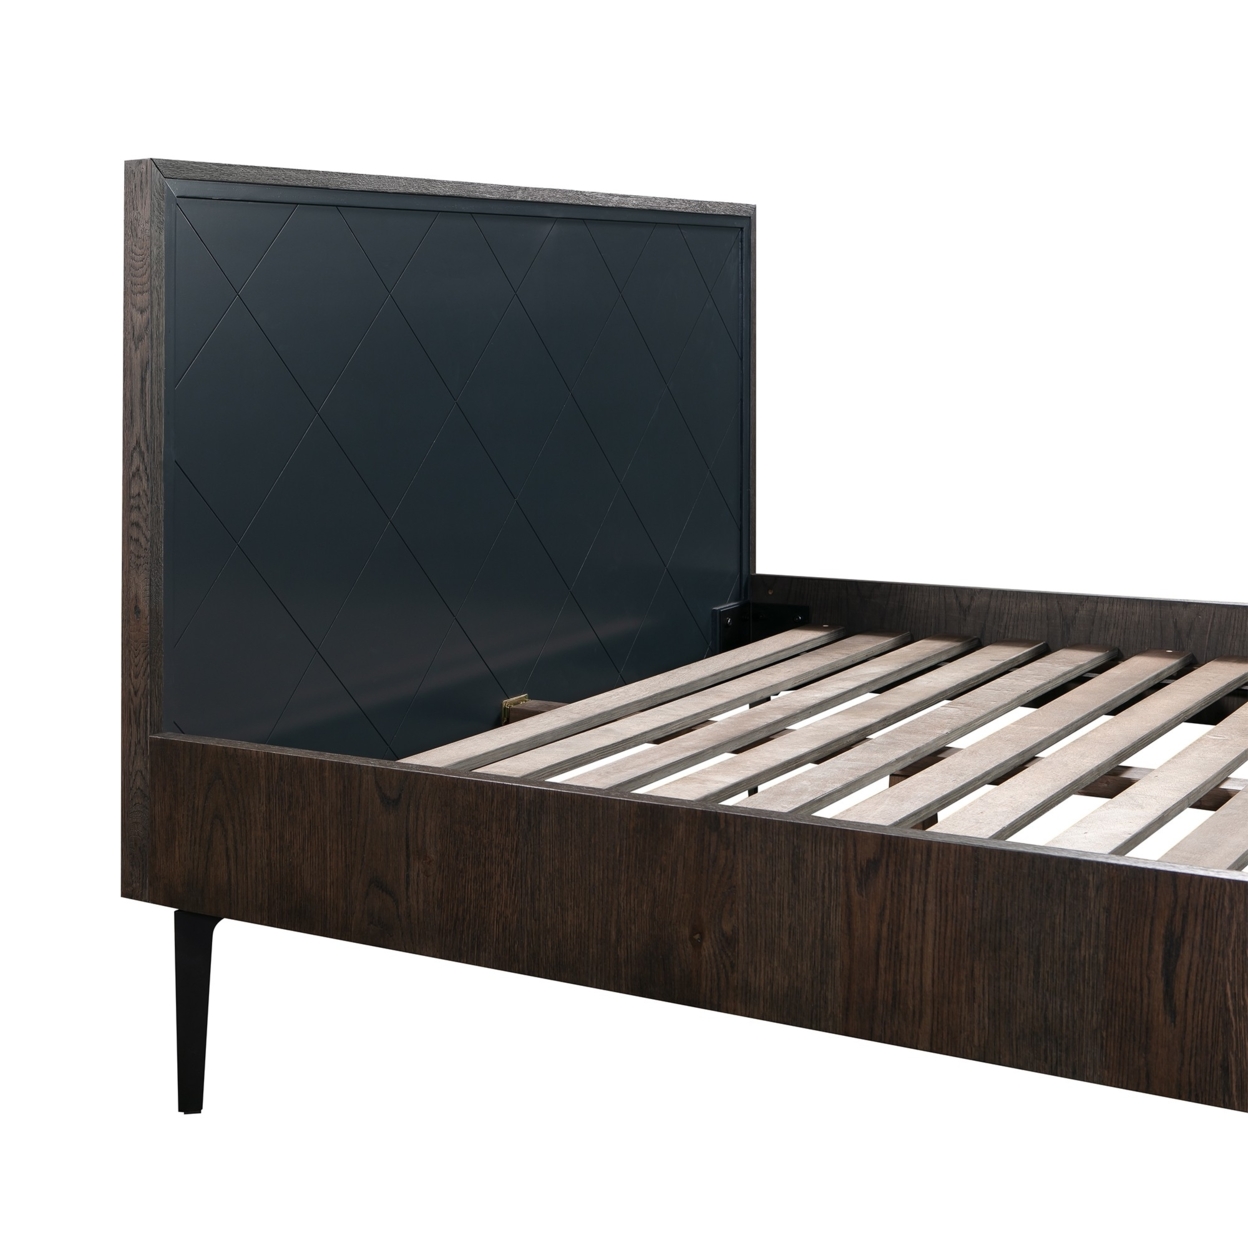 3 Piece Cross Design Wooden Queen Bed With Nightstands, Gray And Brown- Saltoro Sherpi